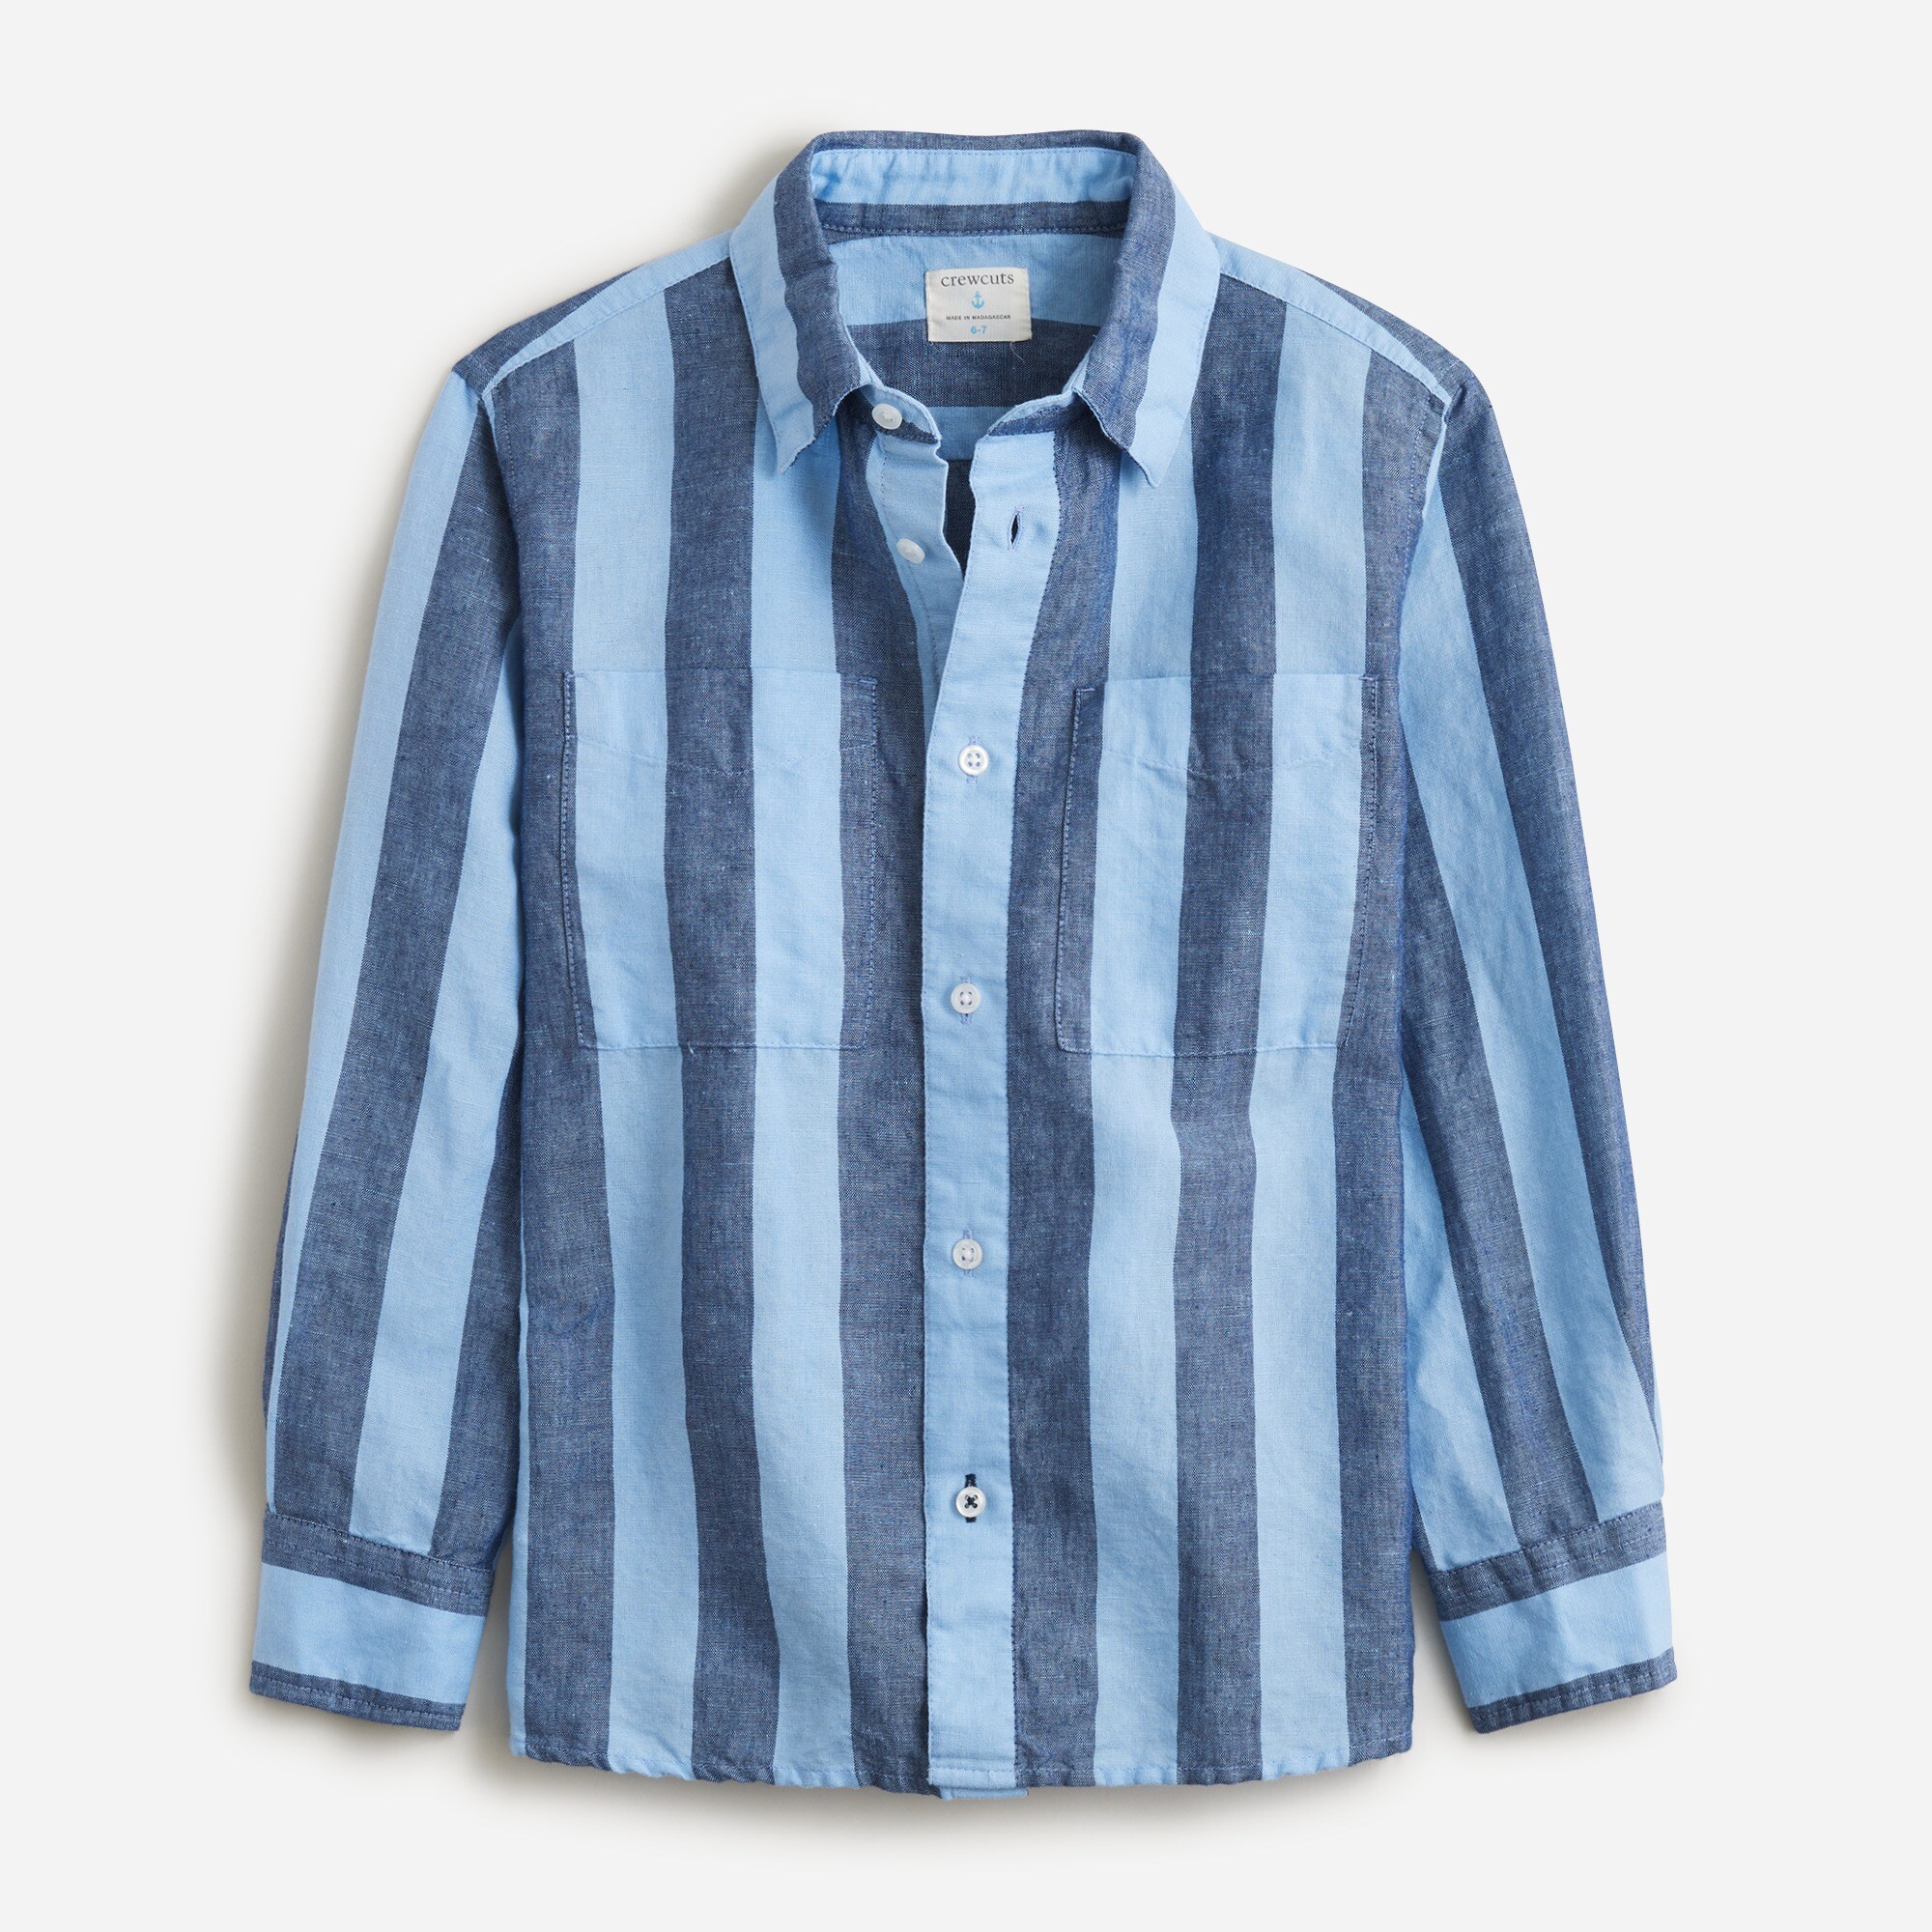  Boys' long-sleeve camp shirt in linen-cotton blend